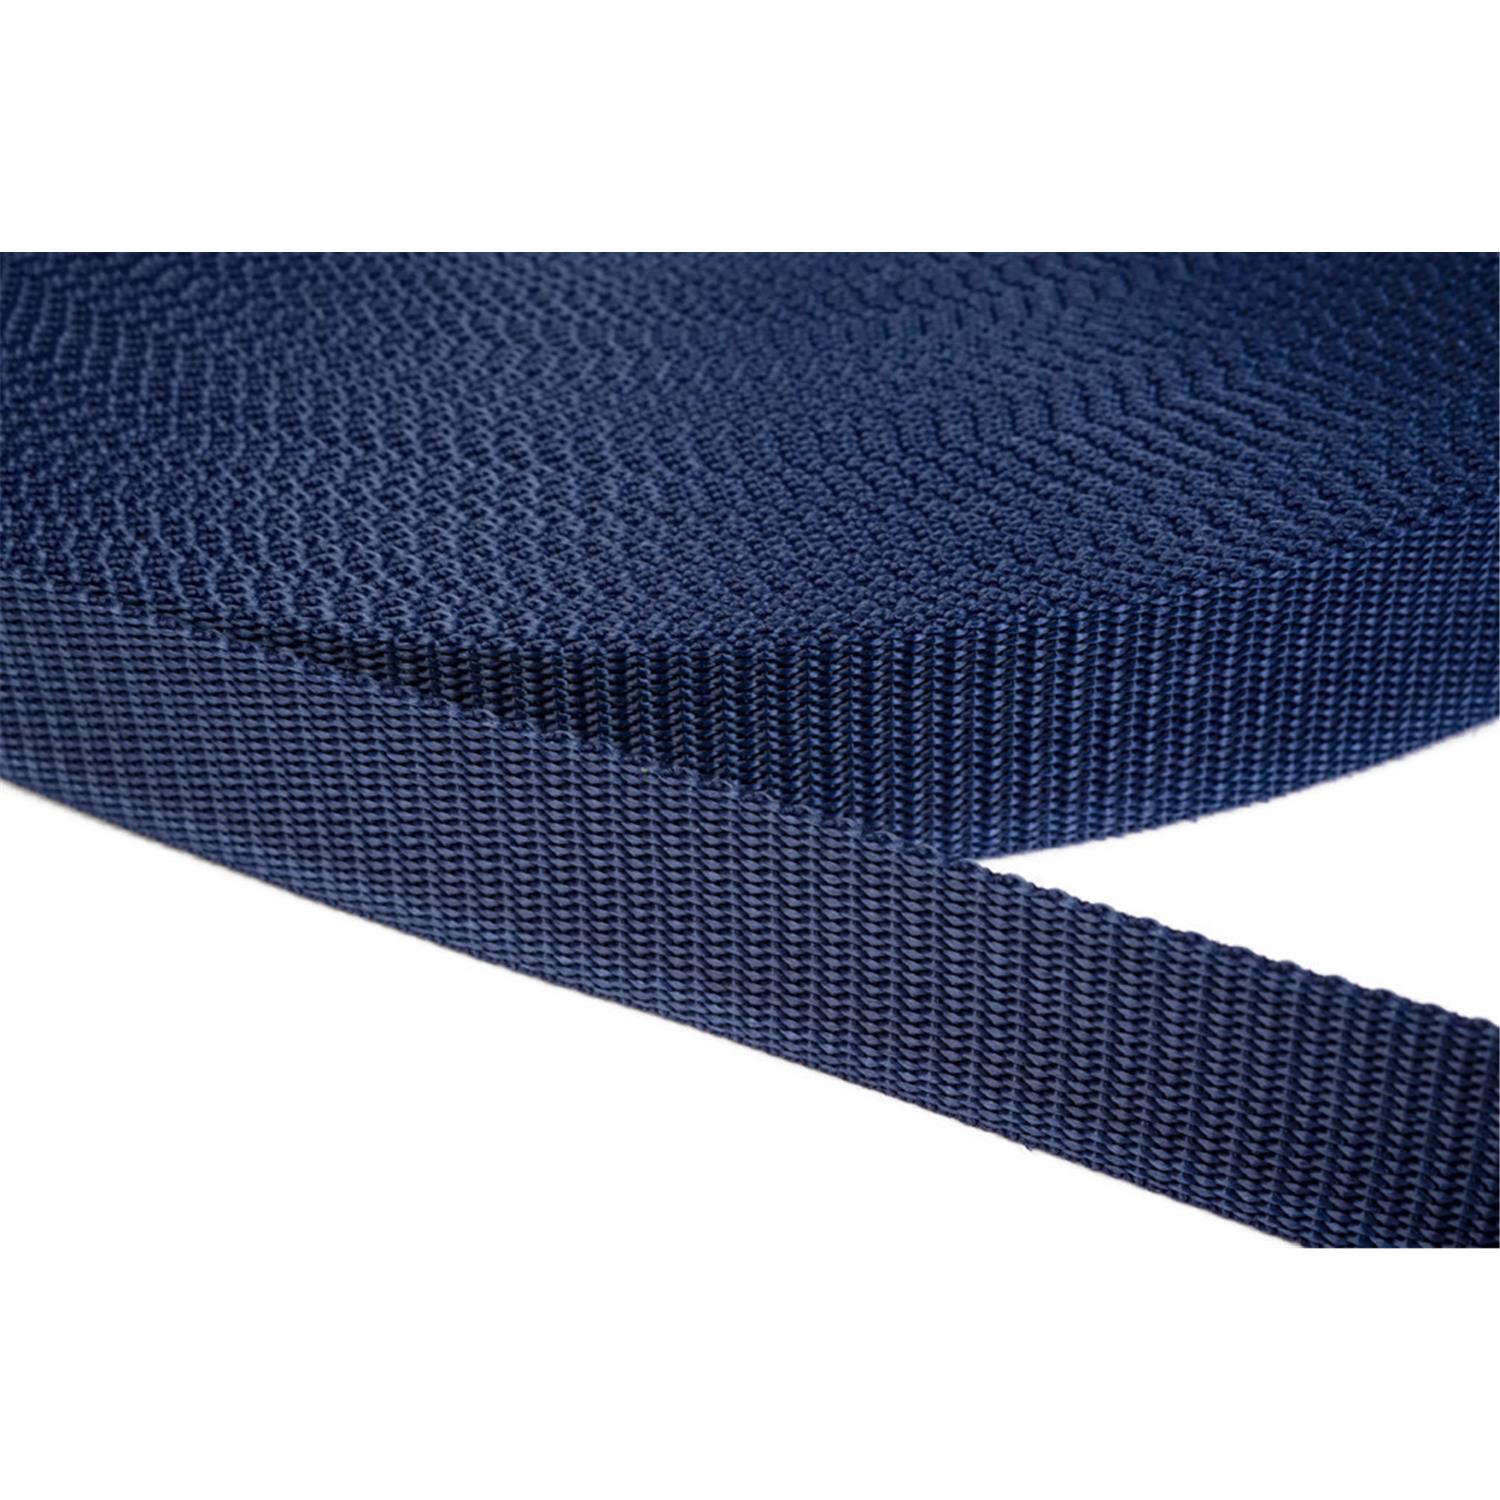 Gurtband 50mm breit aus Polypropylen in 41 Farben 27 - dunkelblau 50 Meter